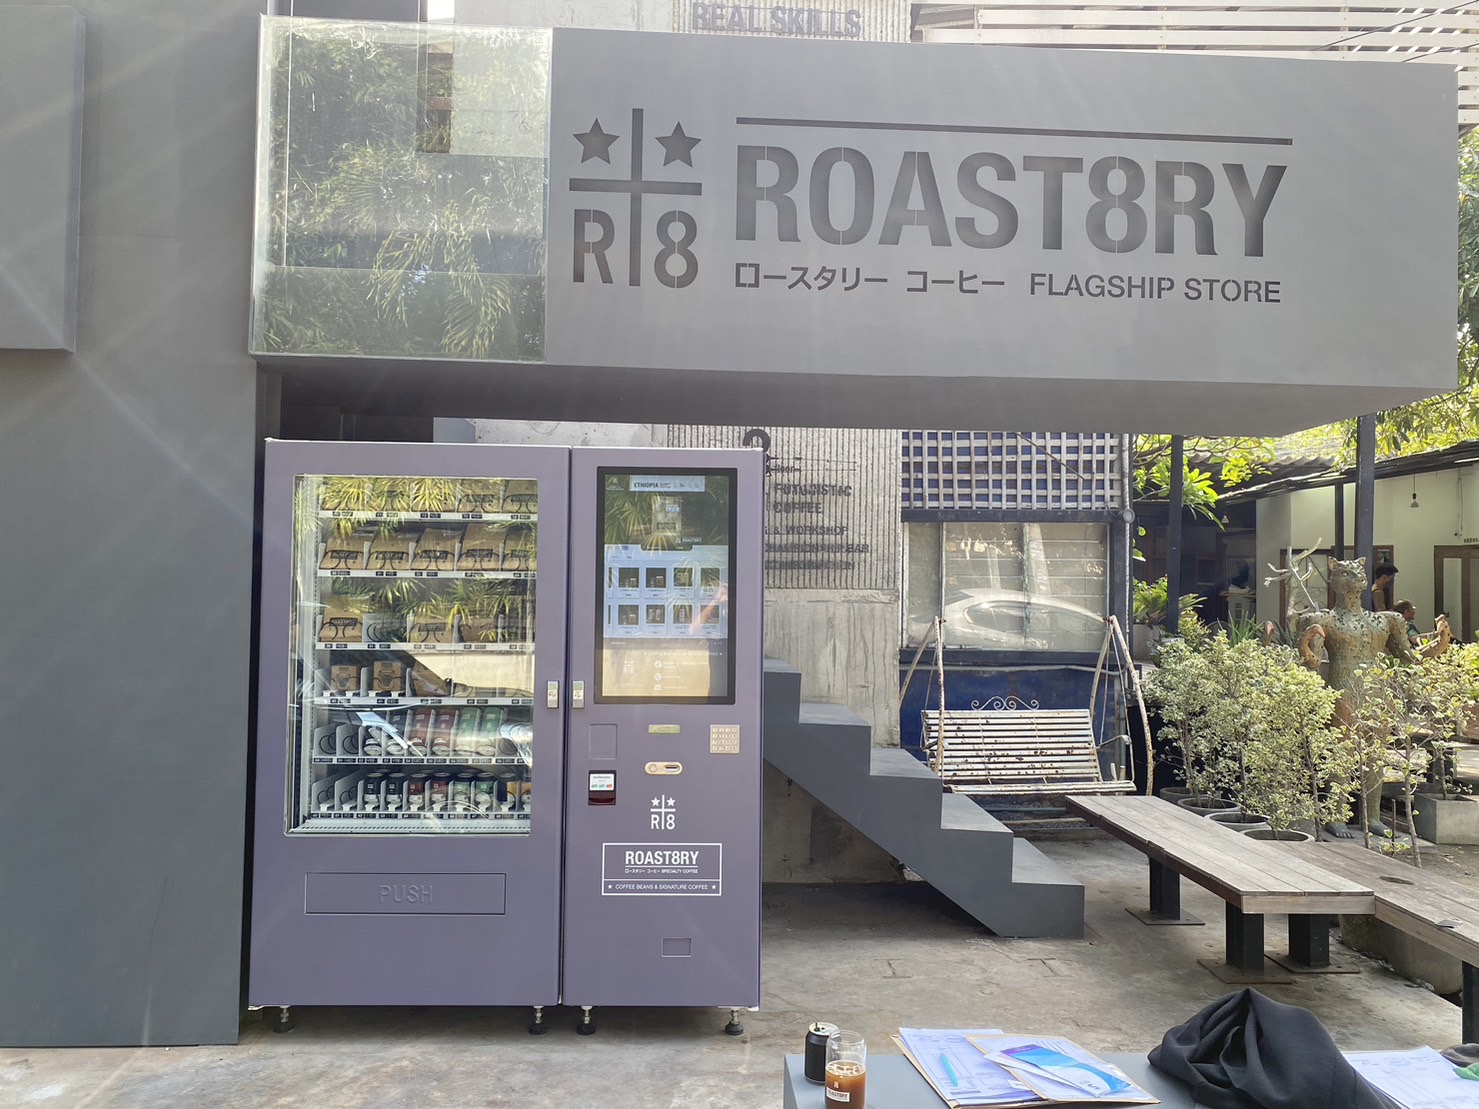 เครื่องจำหน่ายสินค้าอัตโนมัติ ′′Roast8ry′′